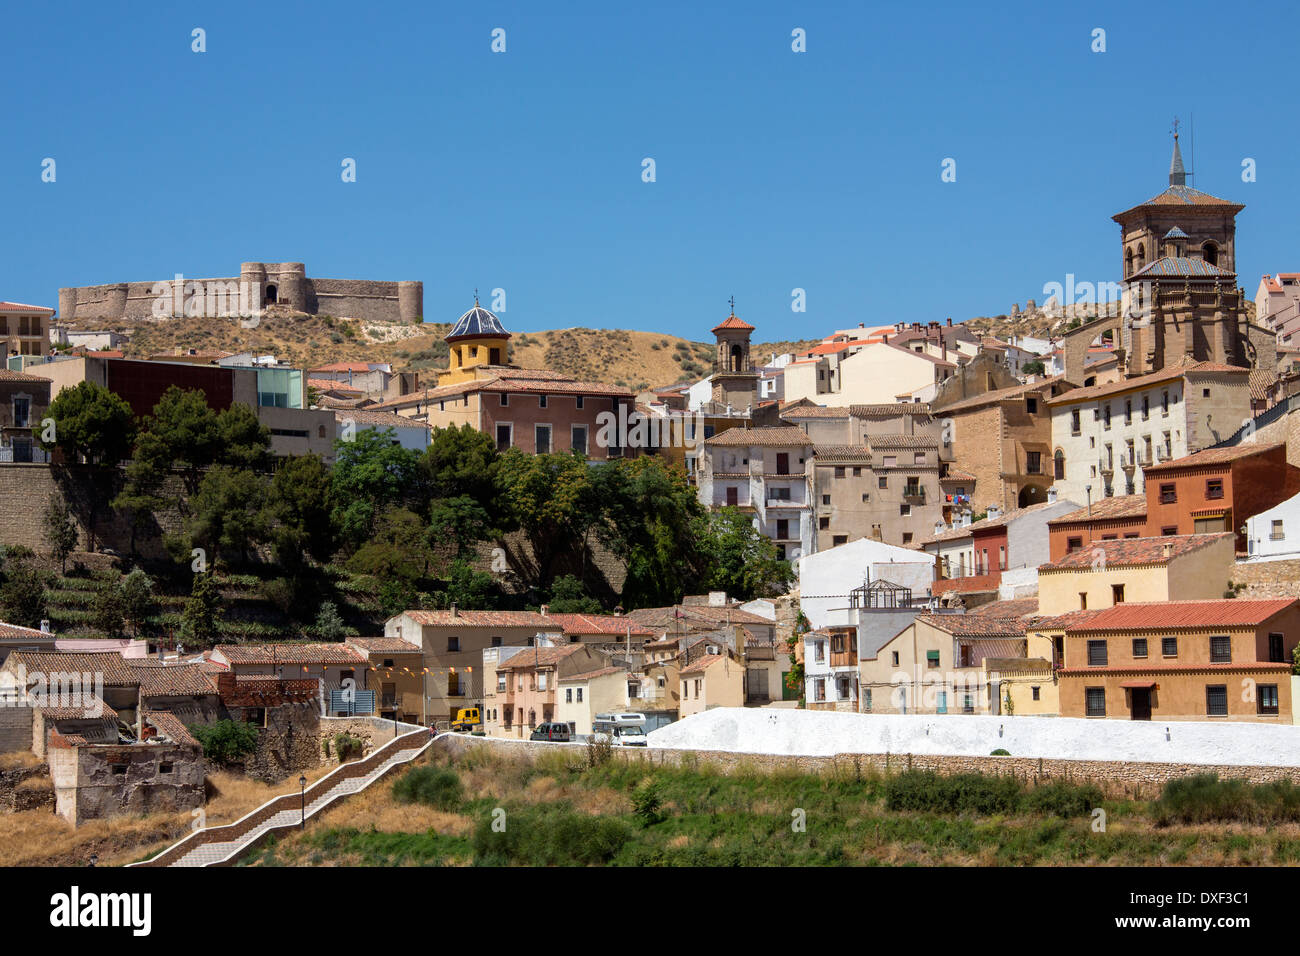 La ville de Chinchilla de Monte l'Argon avec le château médiéval au-dessus. La Mancha région du centre de l'Espagne. Banque D'Images